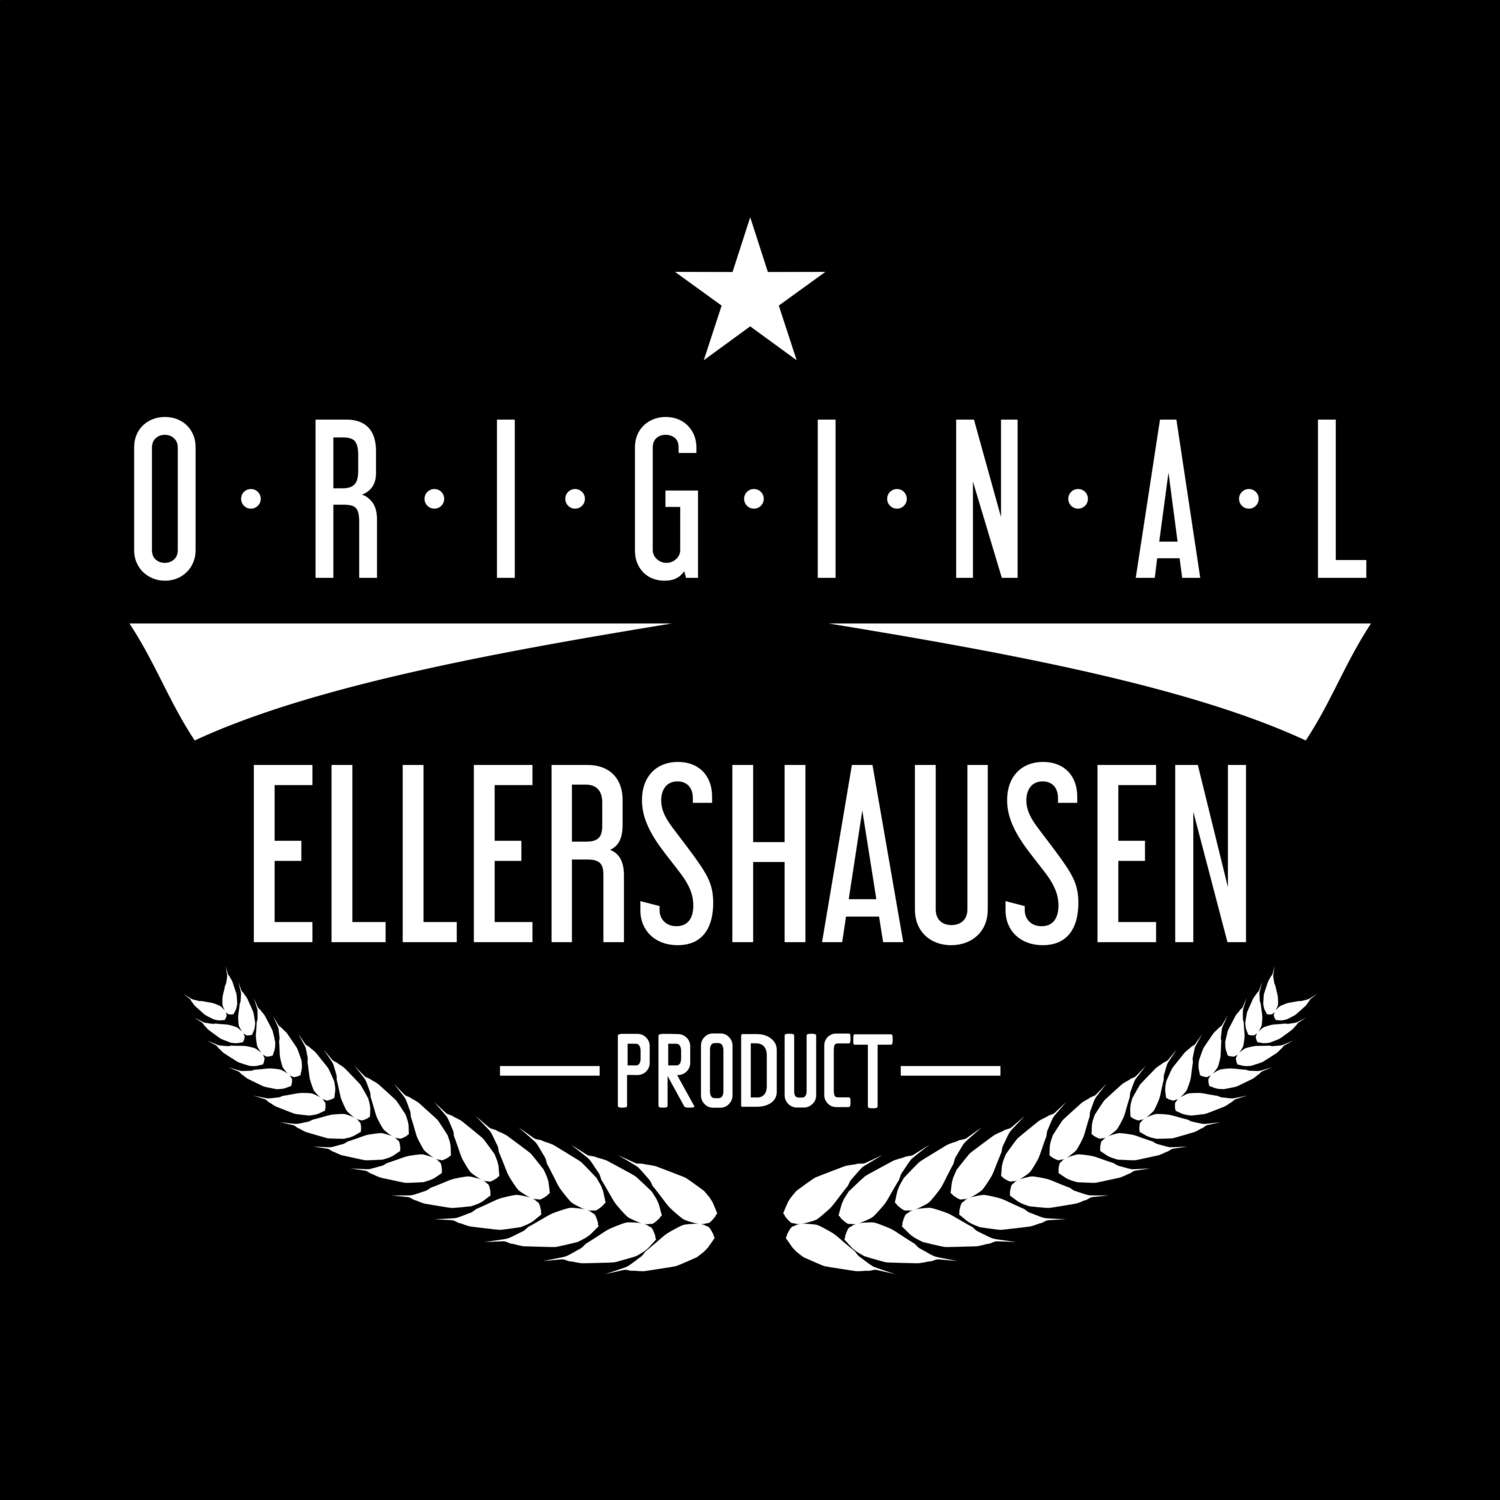 Ellershausen T-Shirt »Original Product«